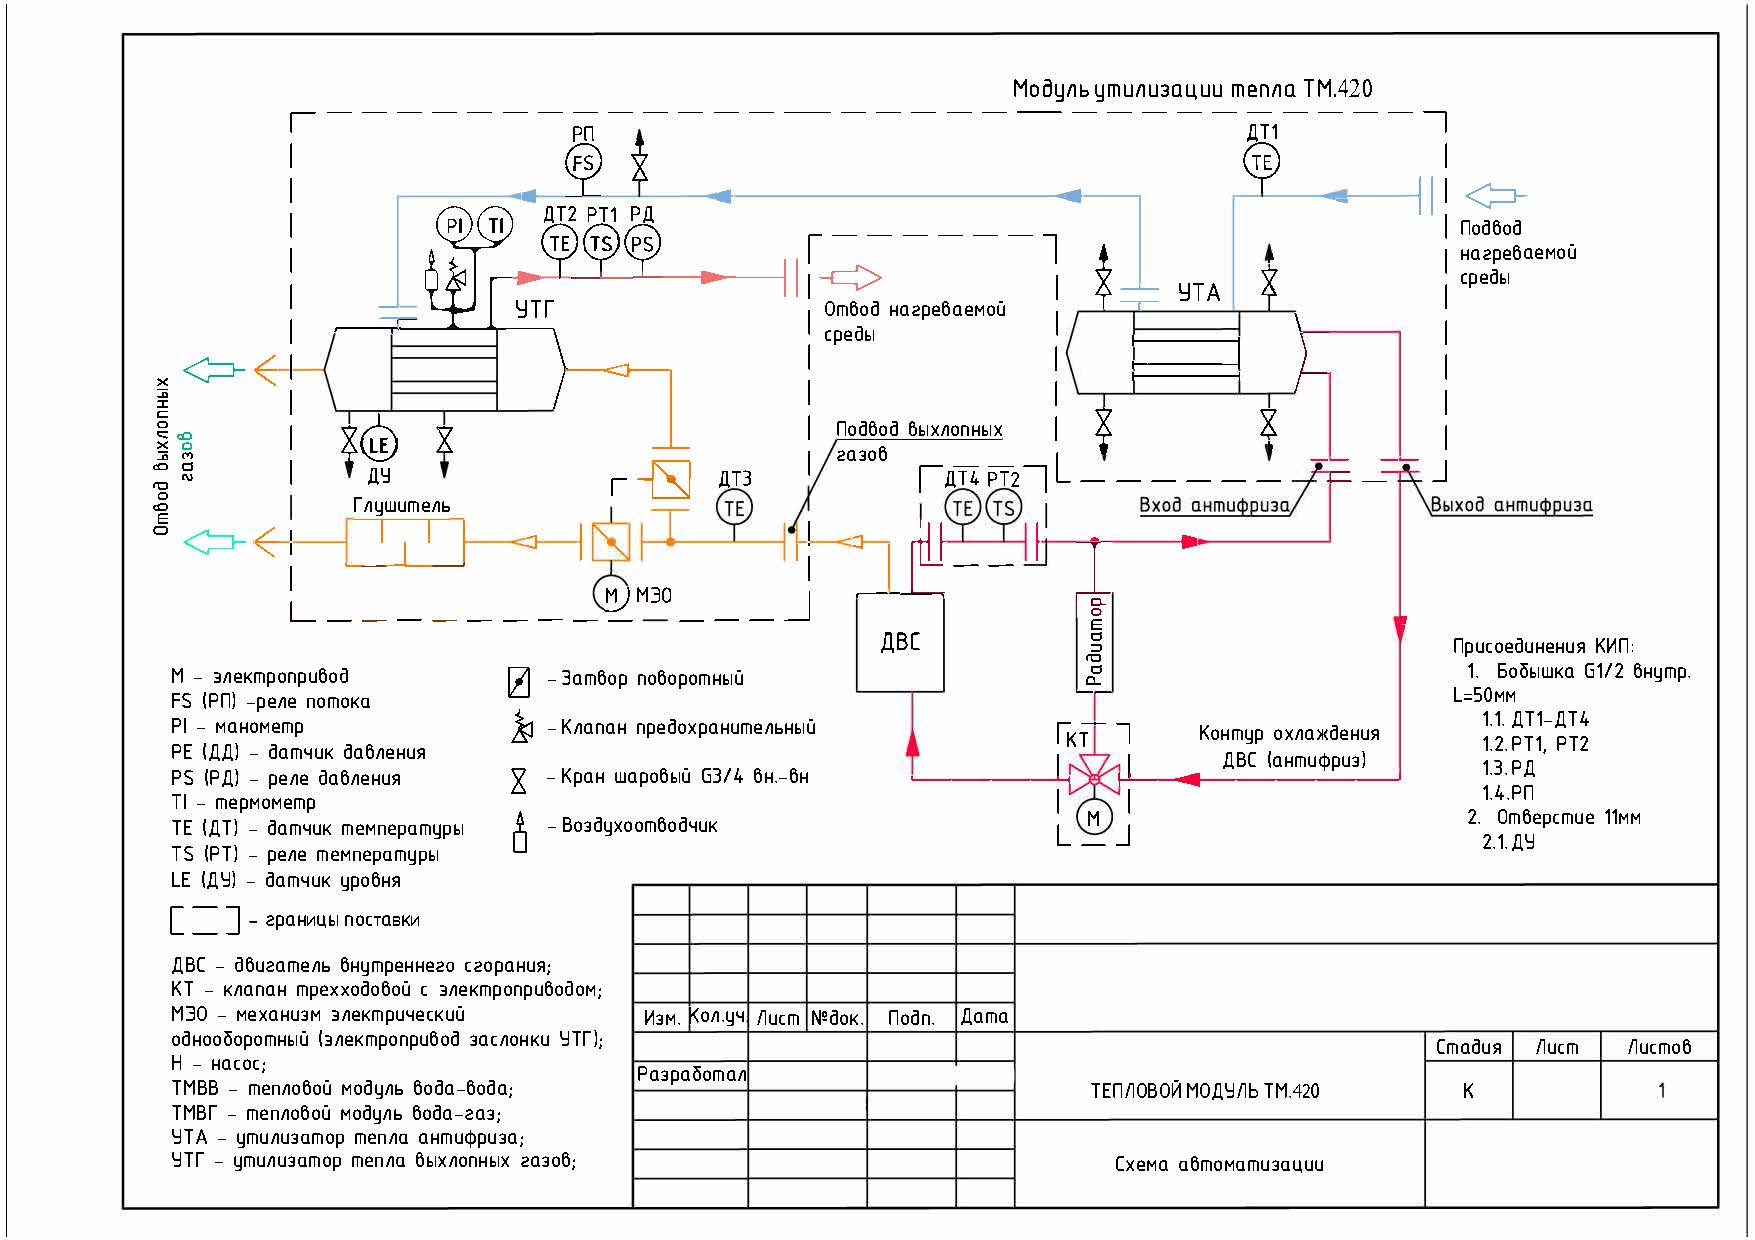 Схема щита теплового модуля газовой электростанции 320 кВт (ТМ.420)